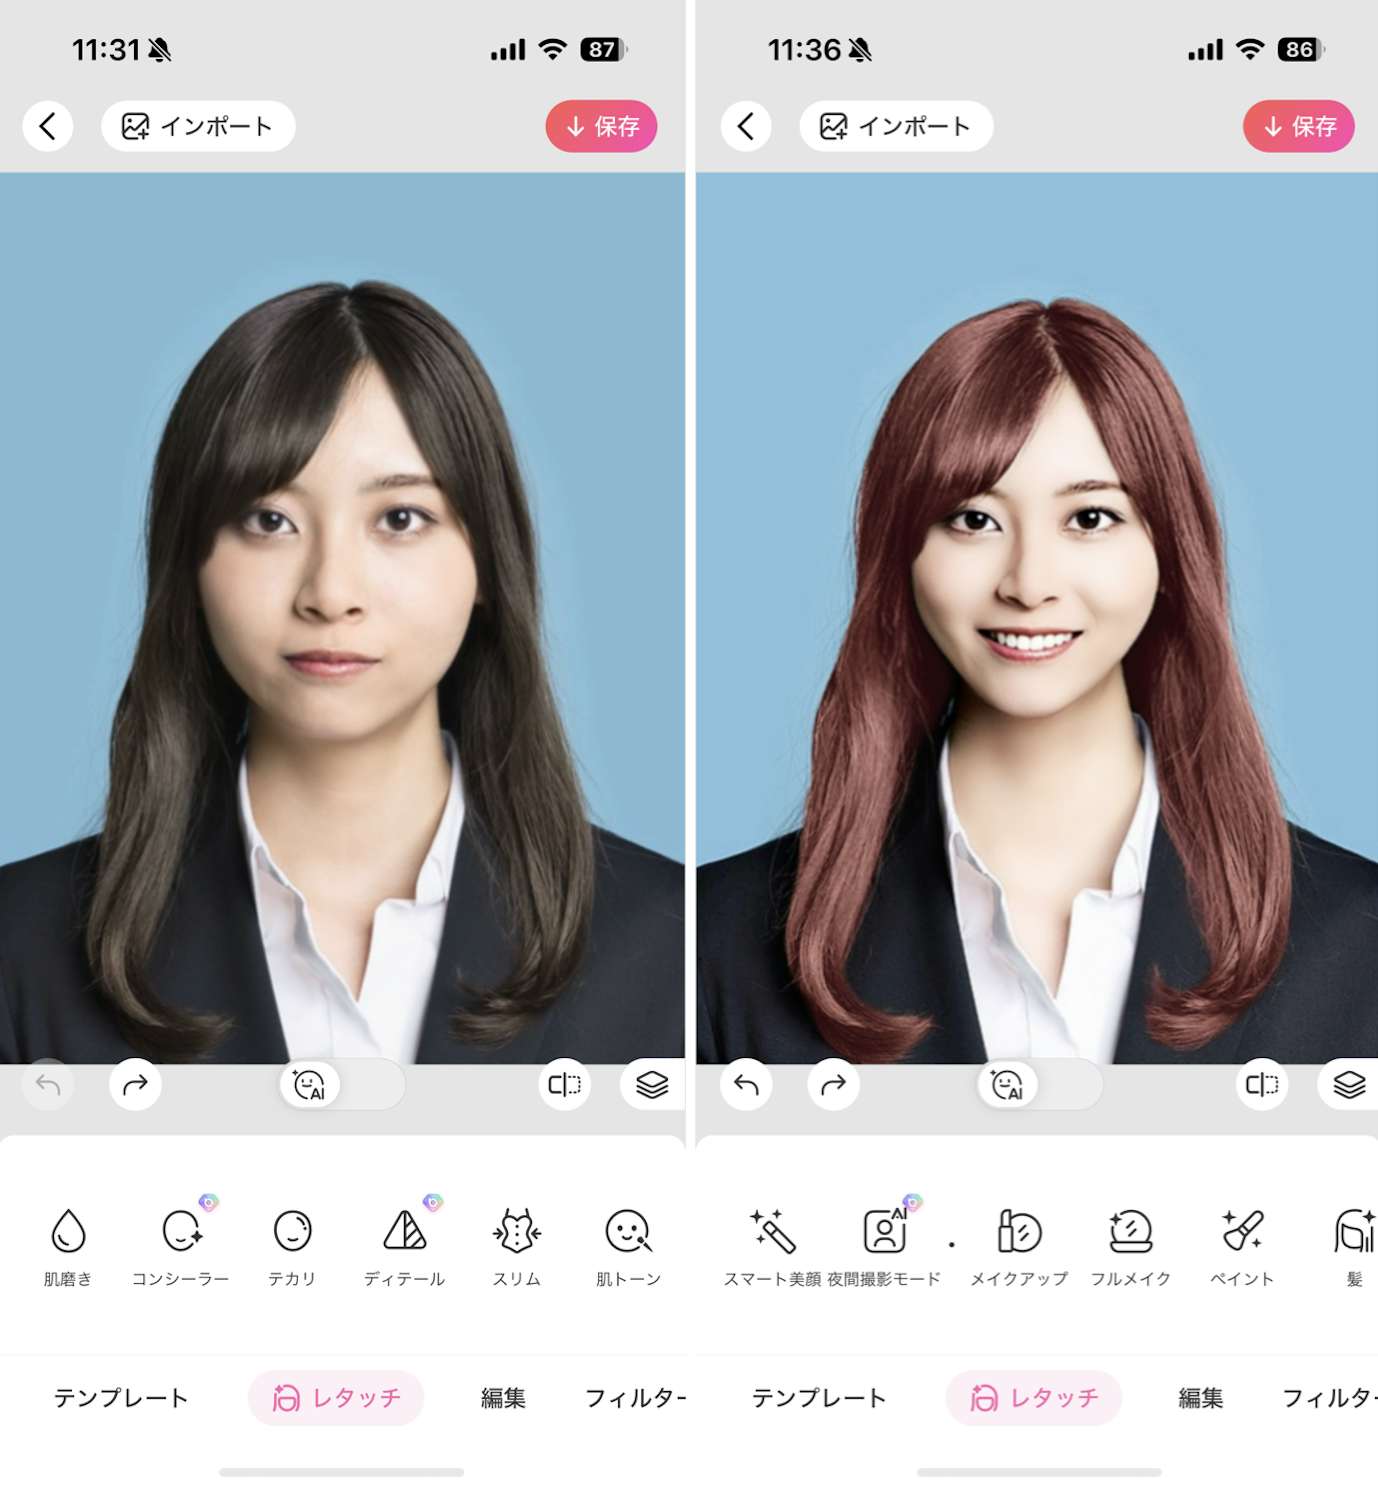 人気アプリ「Beauty Plus」で顔のパーツを修正している様子